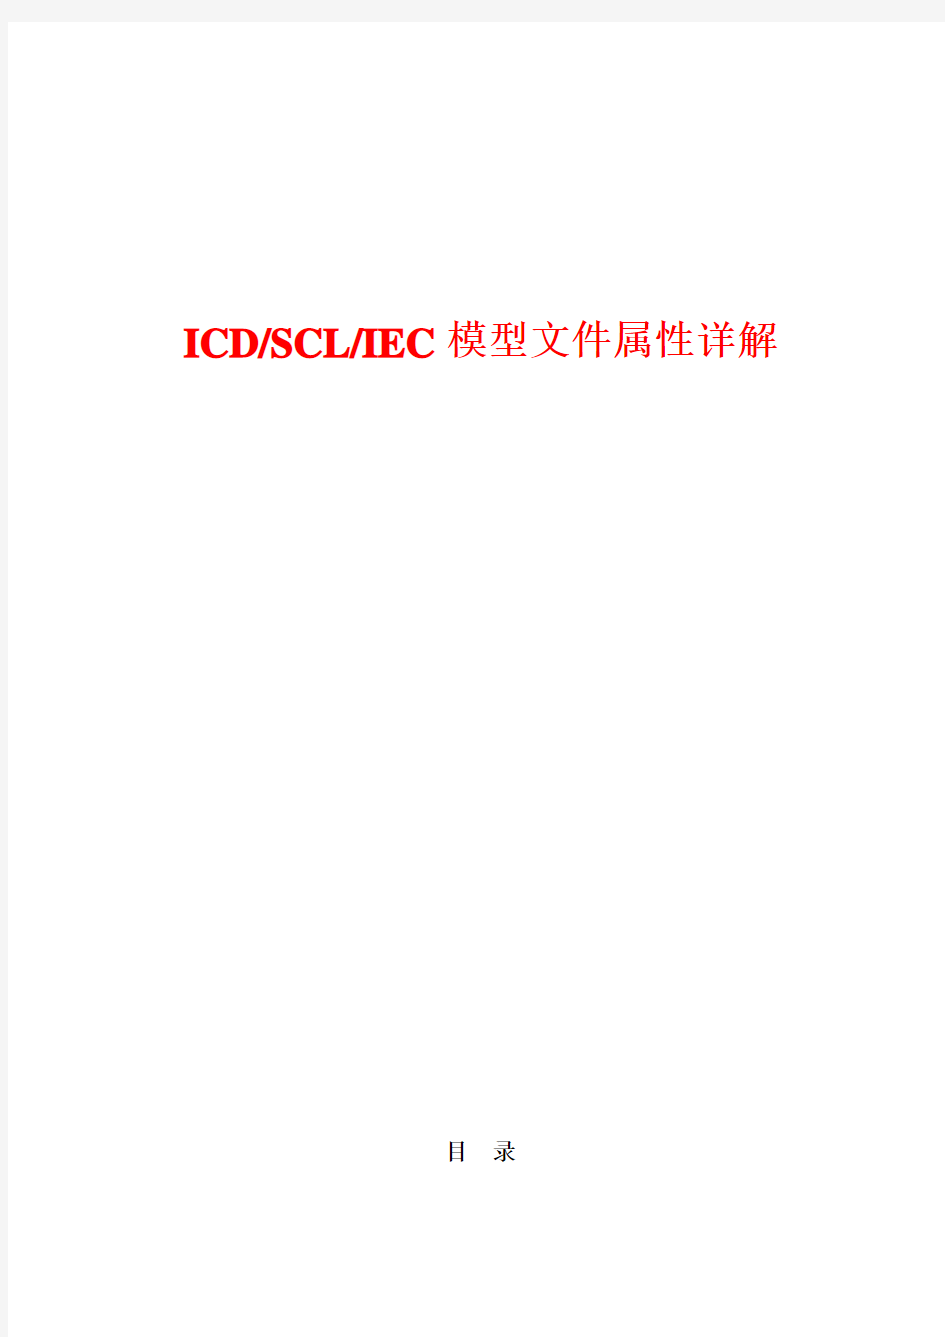 电力规约iec61850 模型文件属性详解 icd scl iec 模型文件属性详解